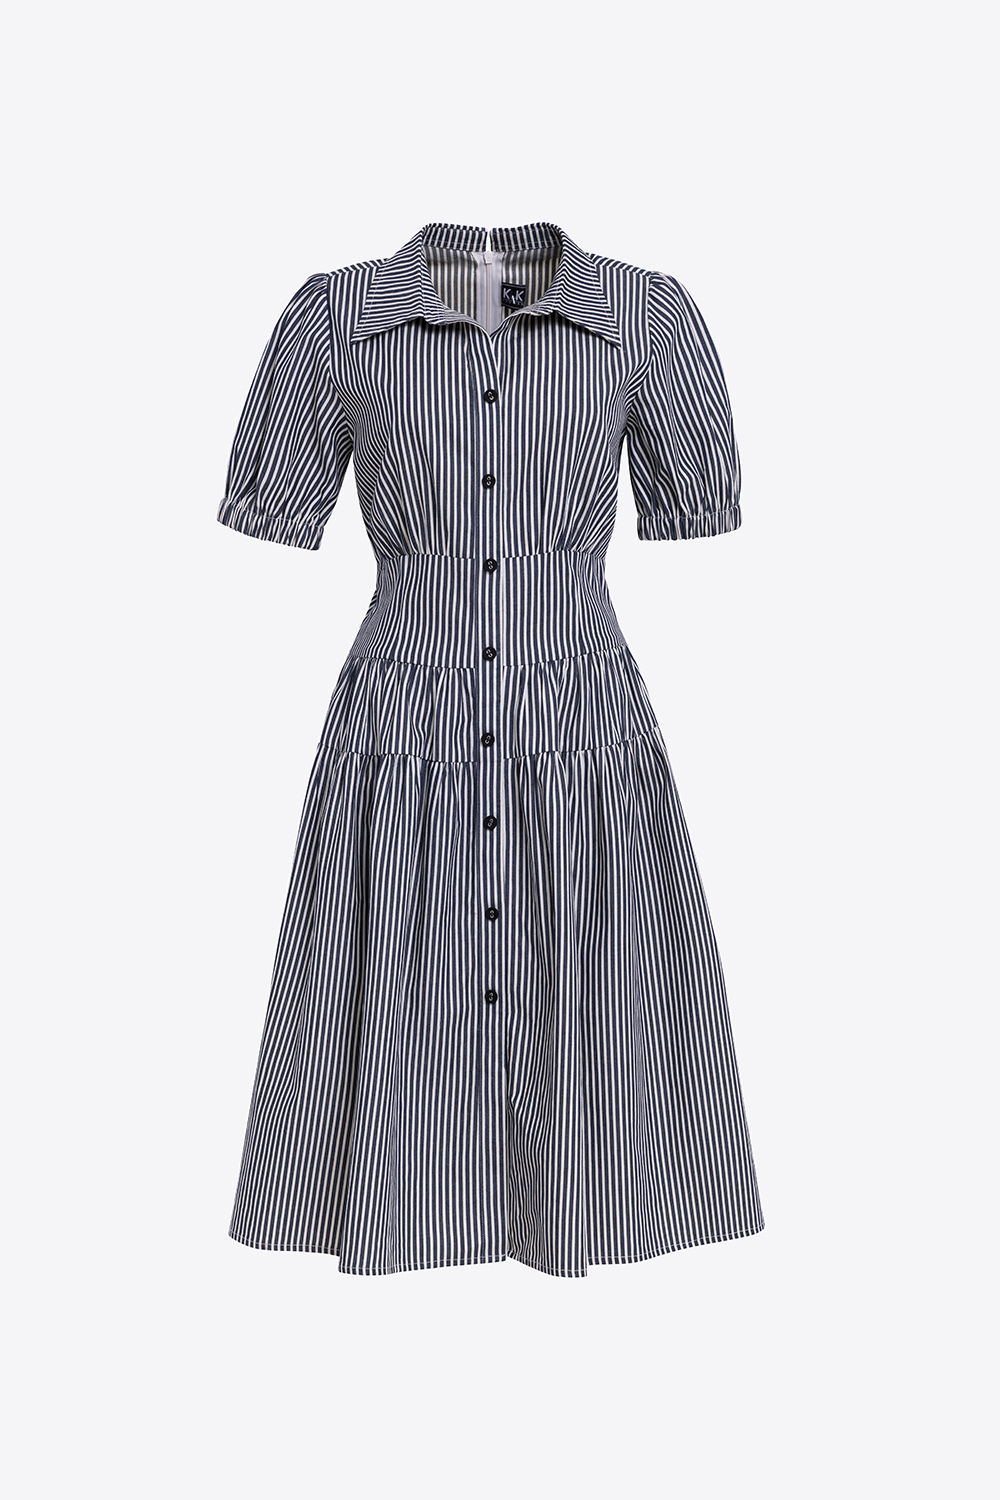 Đầm sơ mi nữ kẻ sọc dáng suông Vintage Váy sơ mi Maxi dài tay kèm đai thời  trang học sinh công sở Style Hàn Quốc V8442  Lazadavn